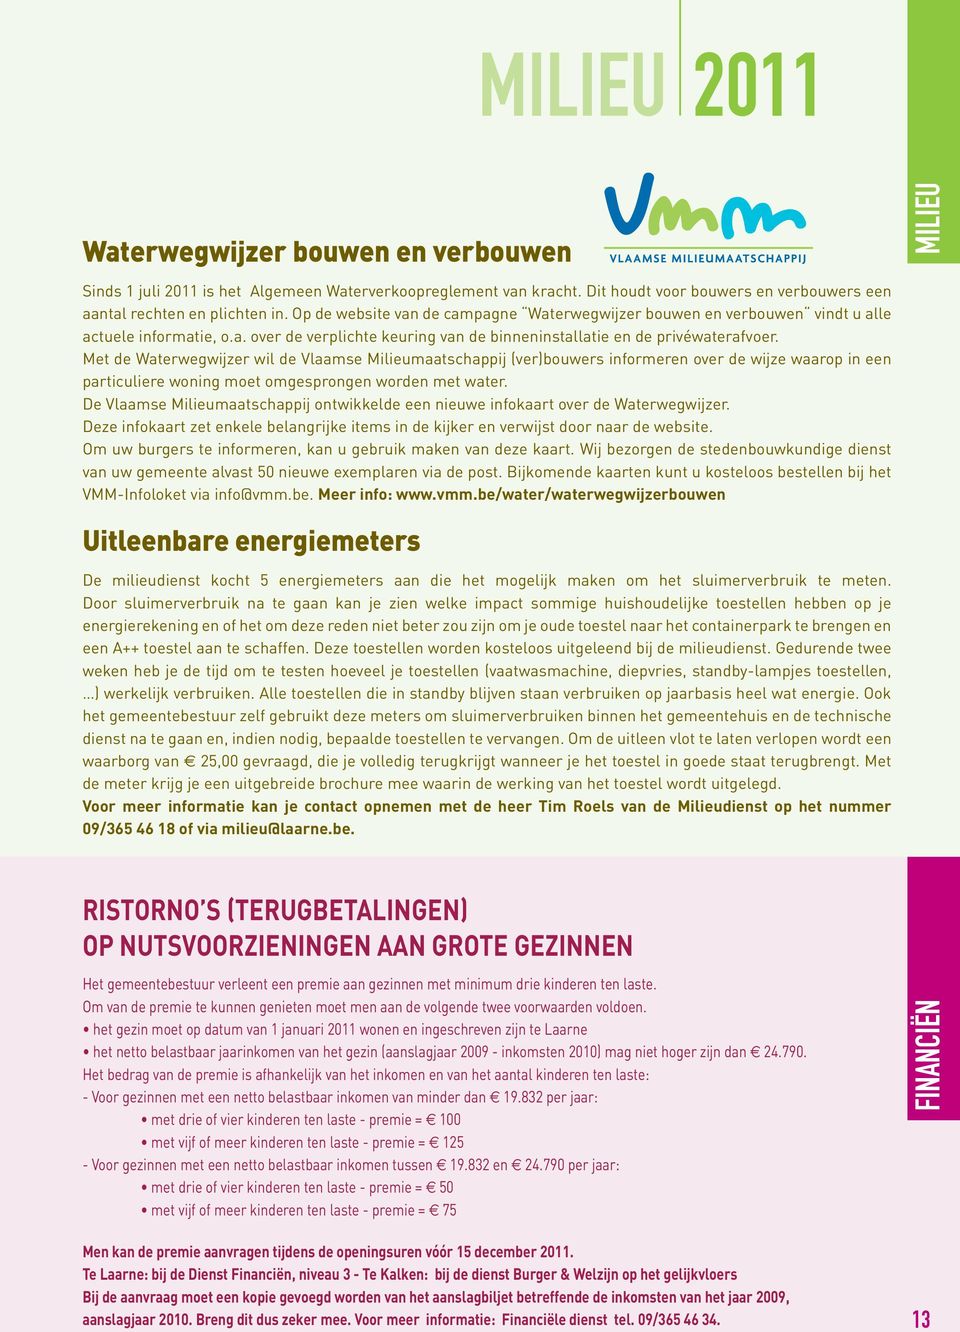 Met de Waterwegwijzer wil de Vlaamse Milieumaatschappij (ver)bouwers informeren over de wijze waarop in een particuliere woning moet omgesprongen worden met water.